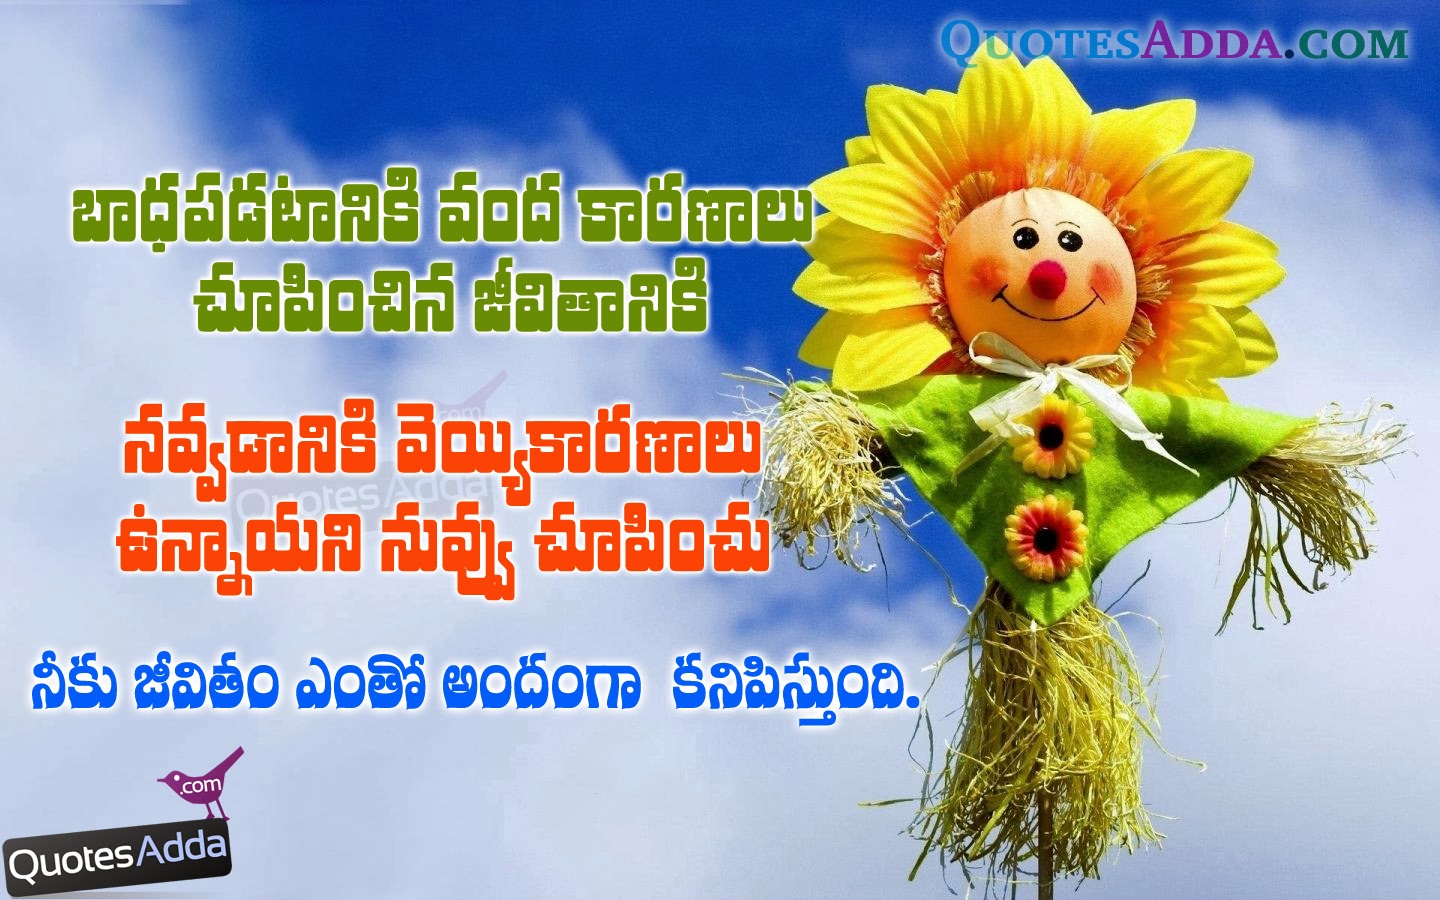 Happy Life Quotes in Telugu | QuotesAdda.com | Telugu Quotes ...